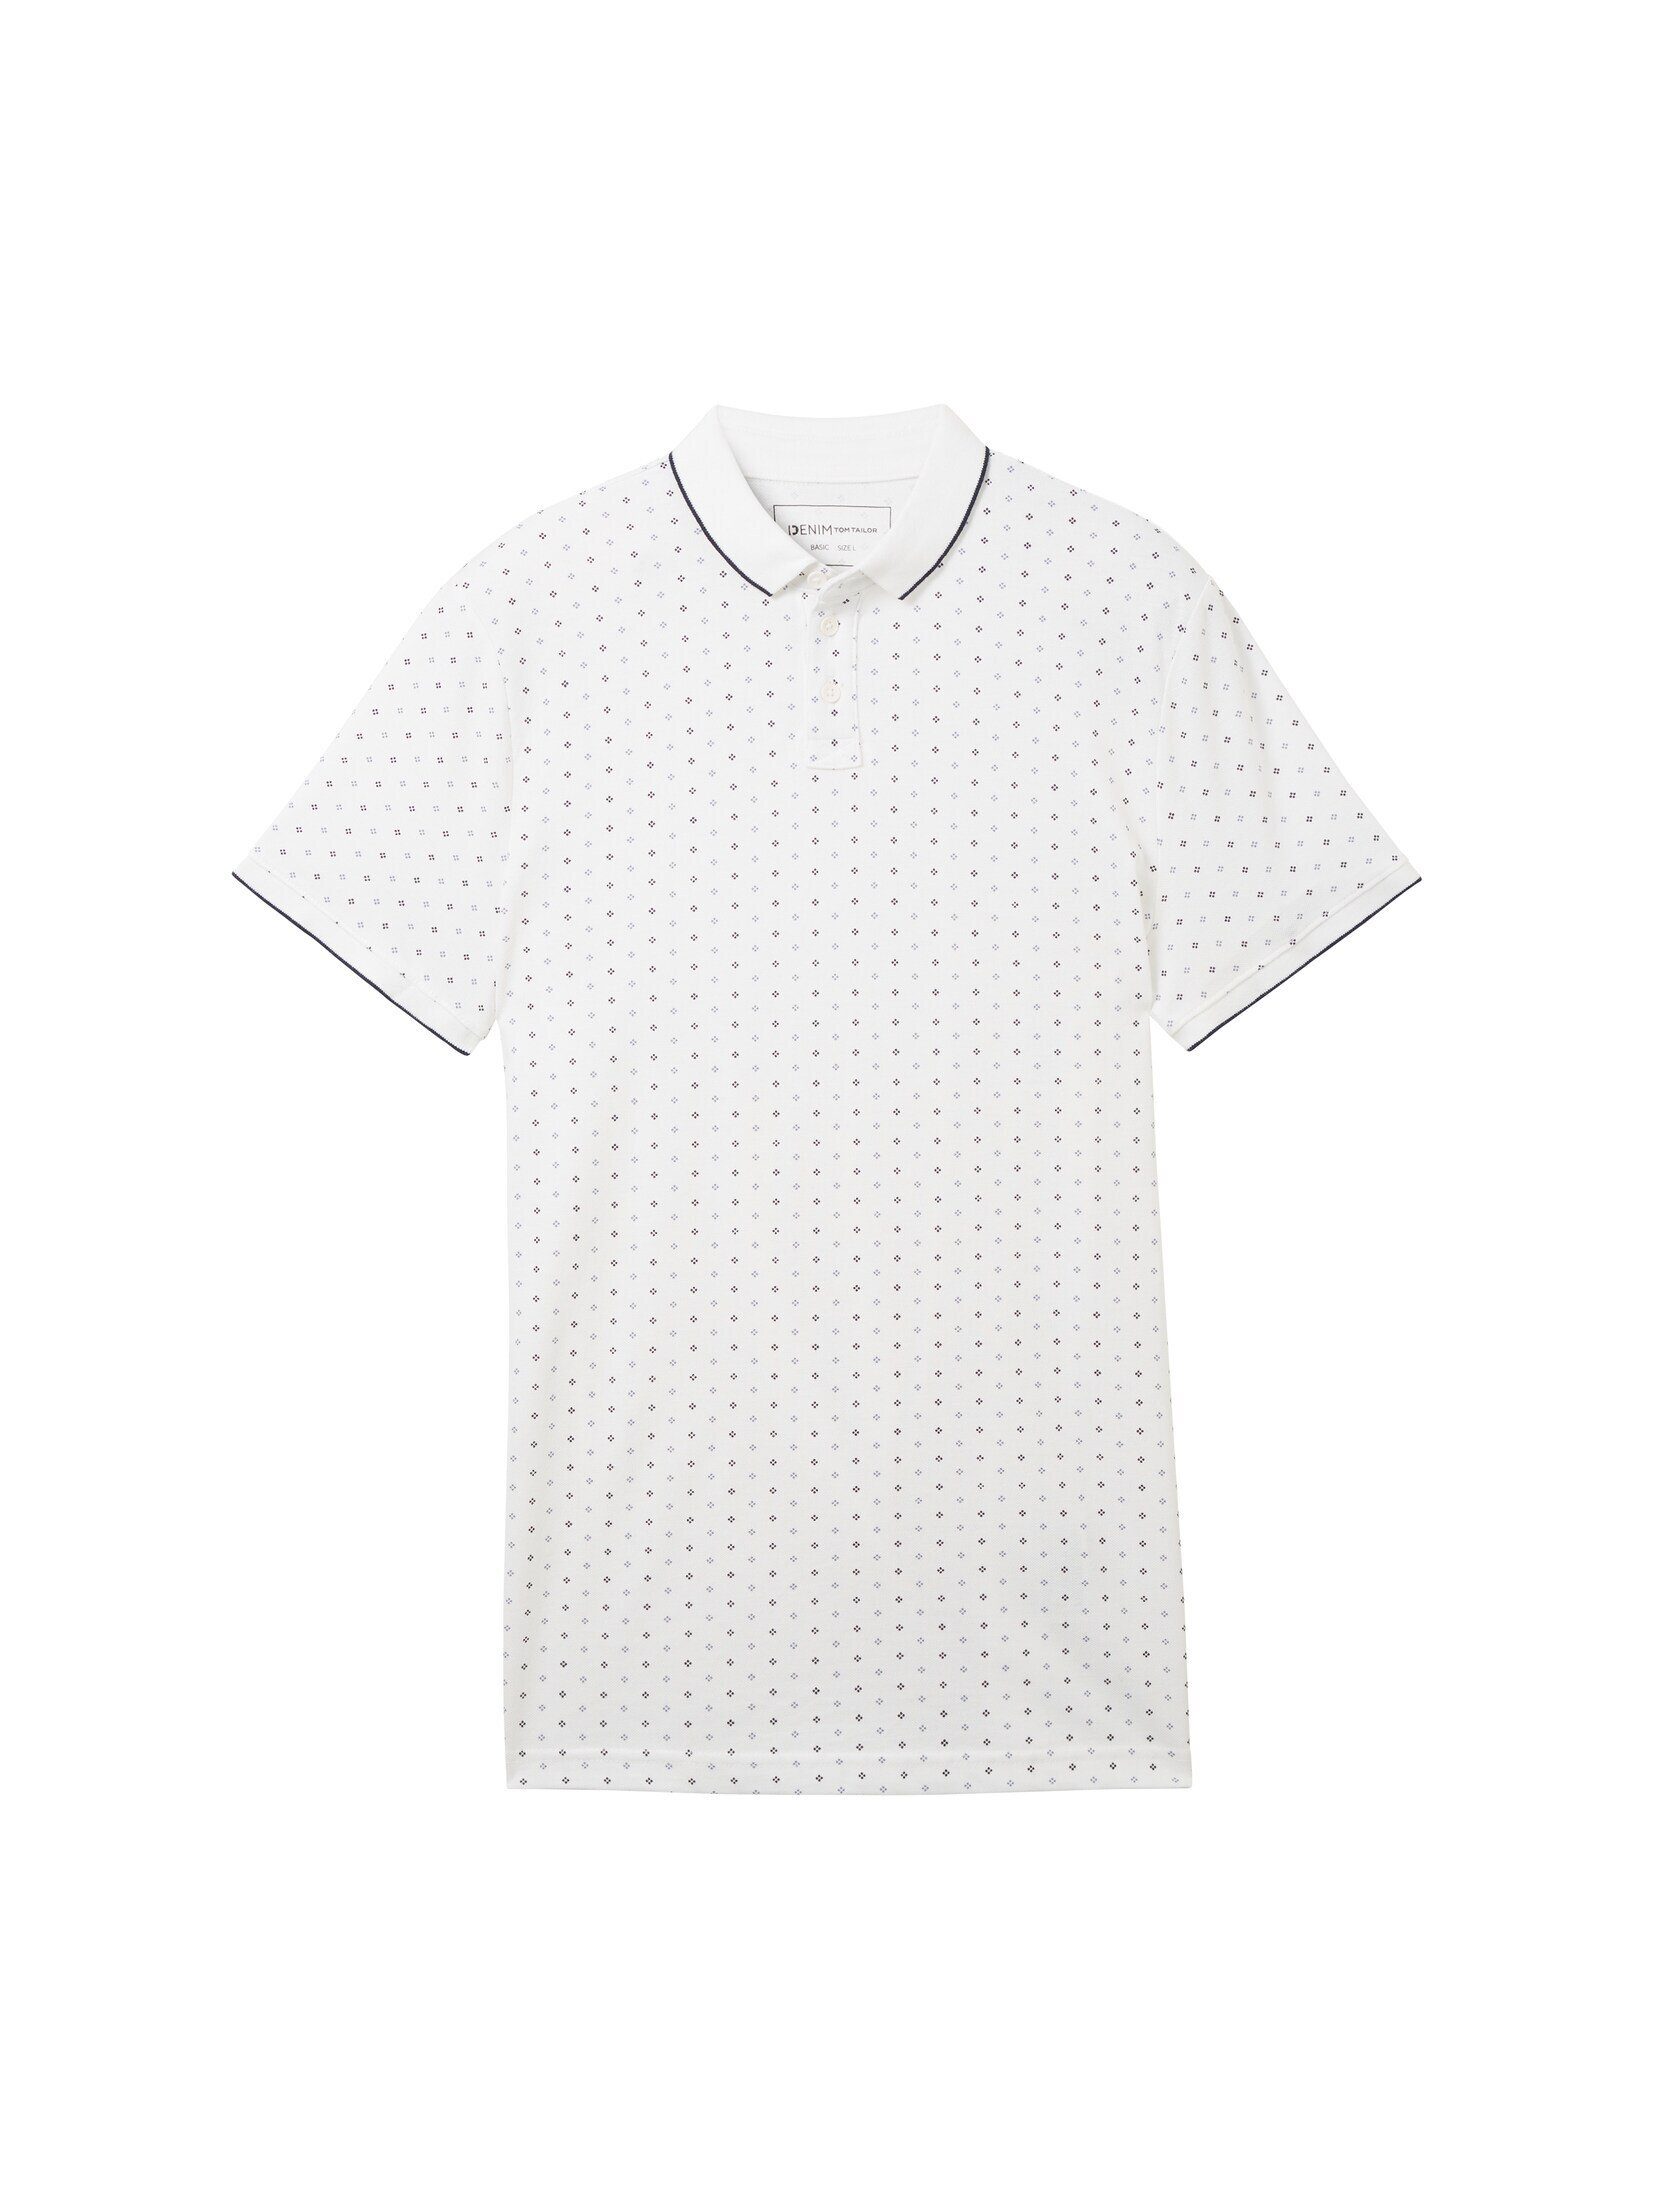 mit TOM Poloshirt Poloshirt regular TAILOR dot white print Allover-Print Denim